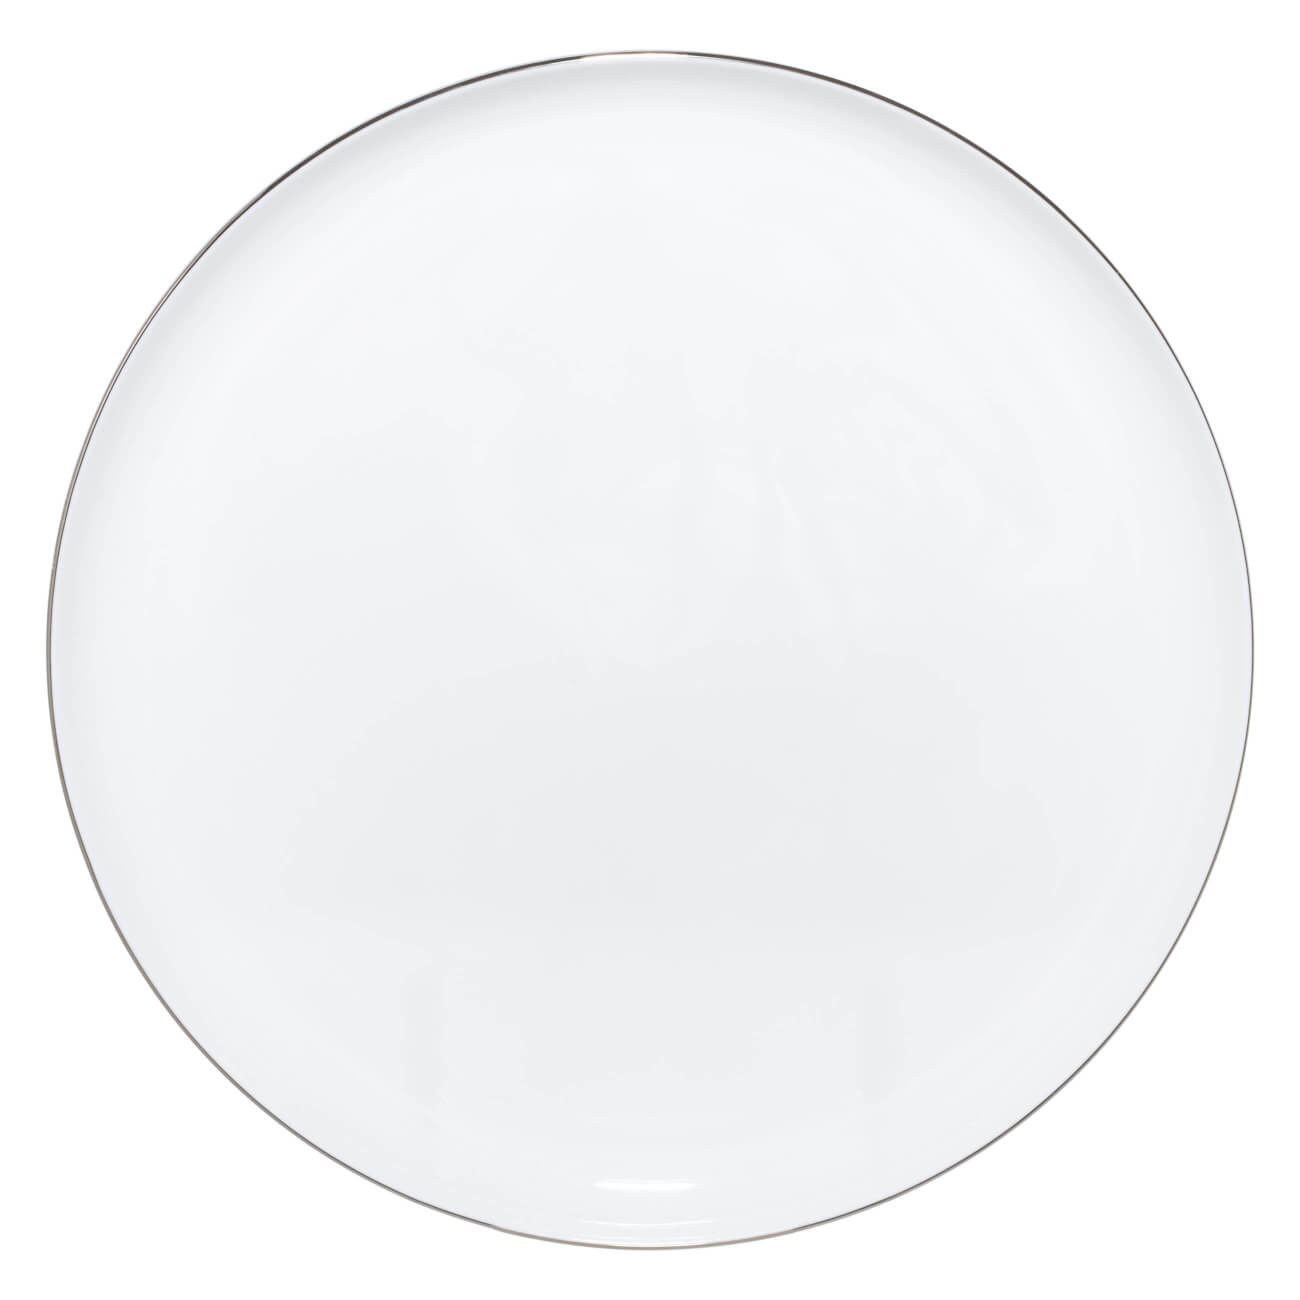 Тарелка обеденная, 28 см, фарфор F, Antarctica тарелка обеденная фарфор 25 см круглая harmony fioretta tdp341